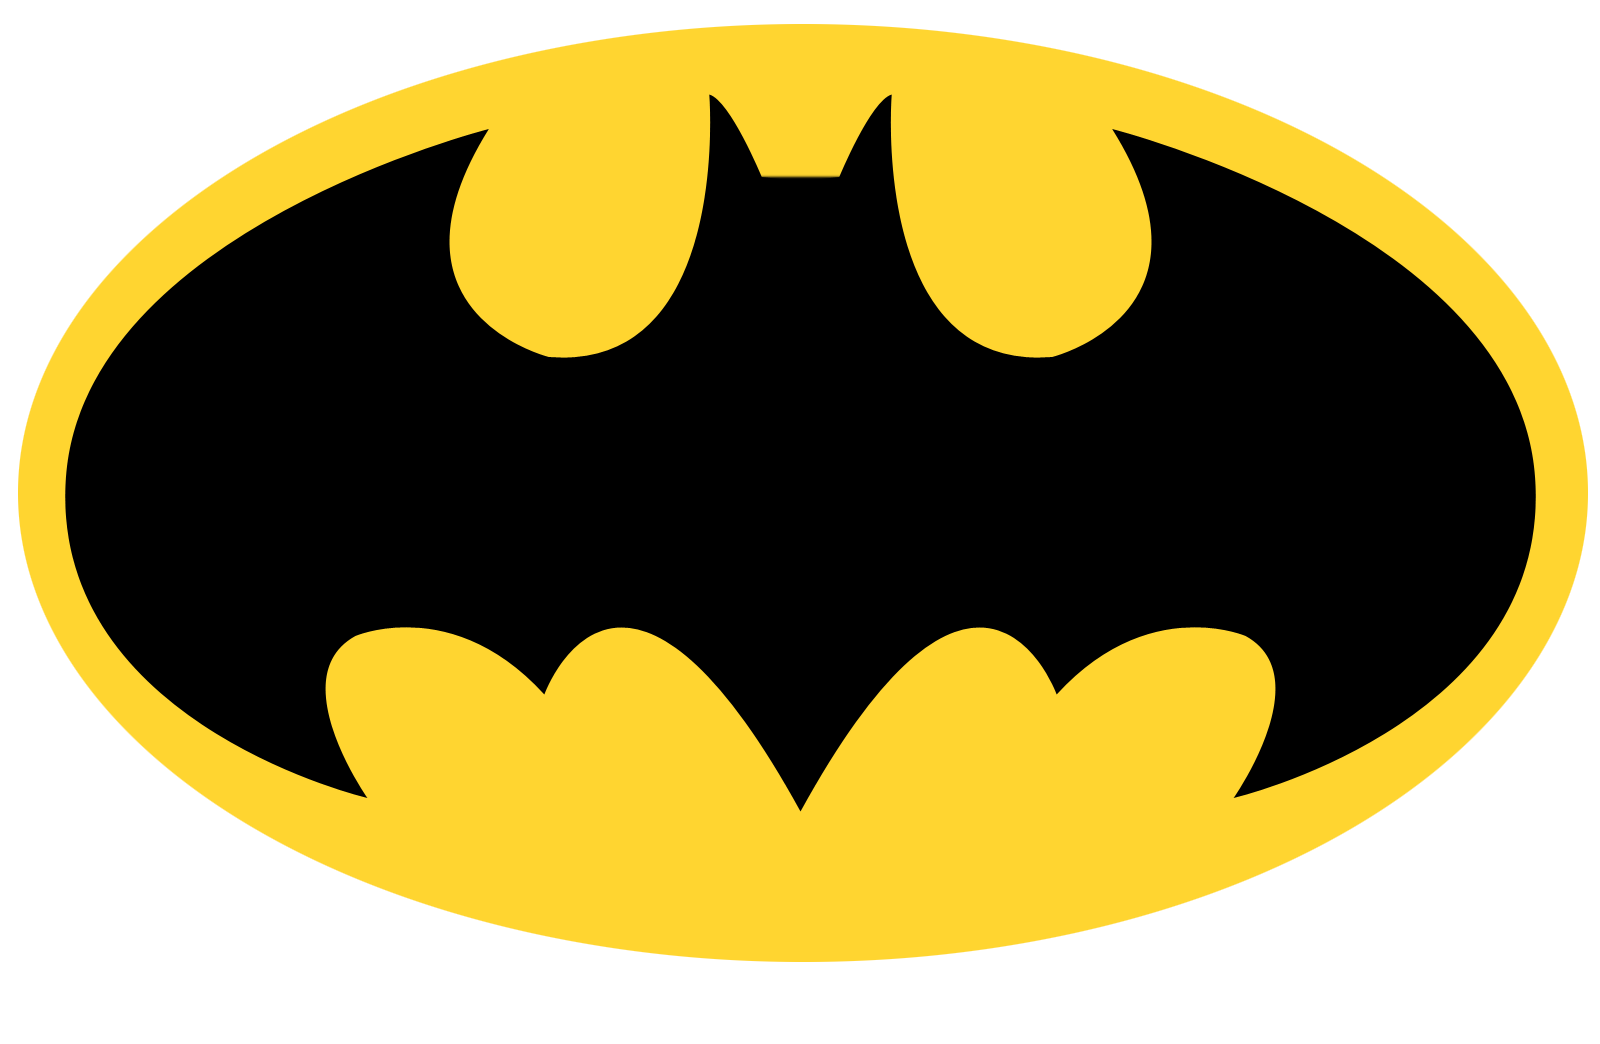 Batman, Joker, Batman Logo, PNG Transparent Images | PNG All